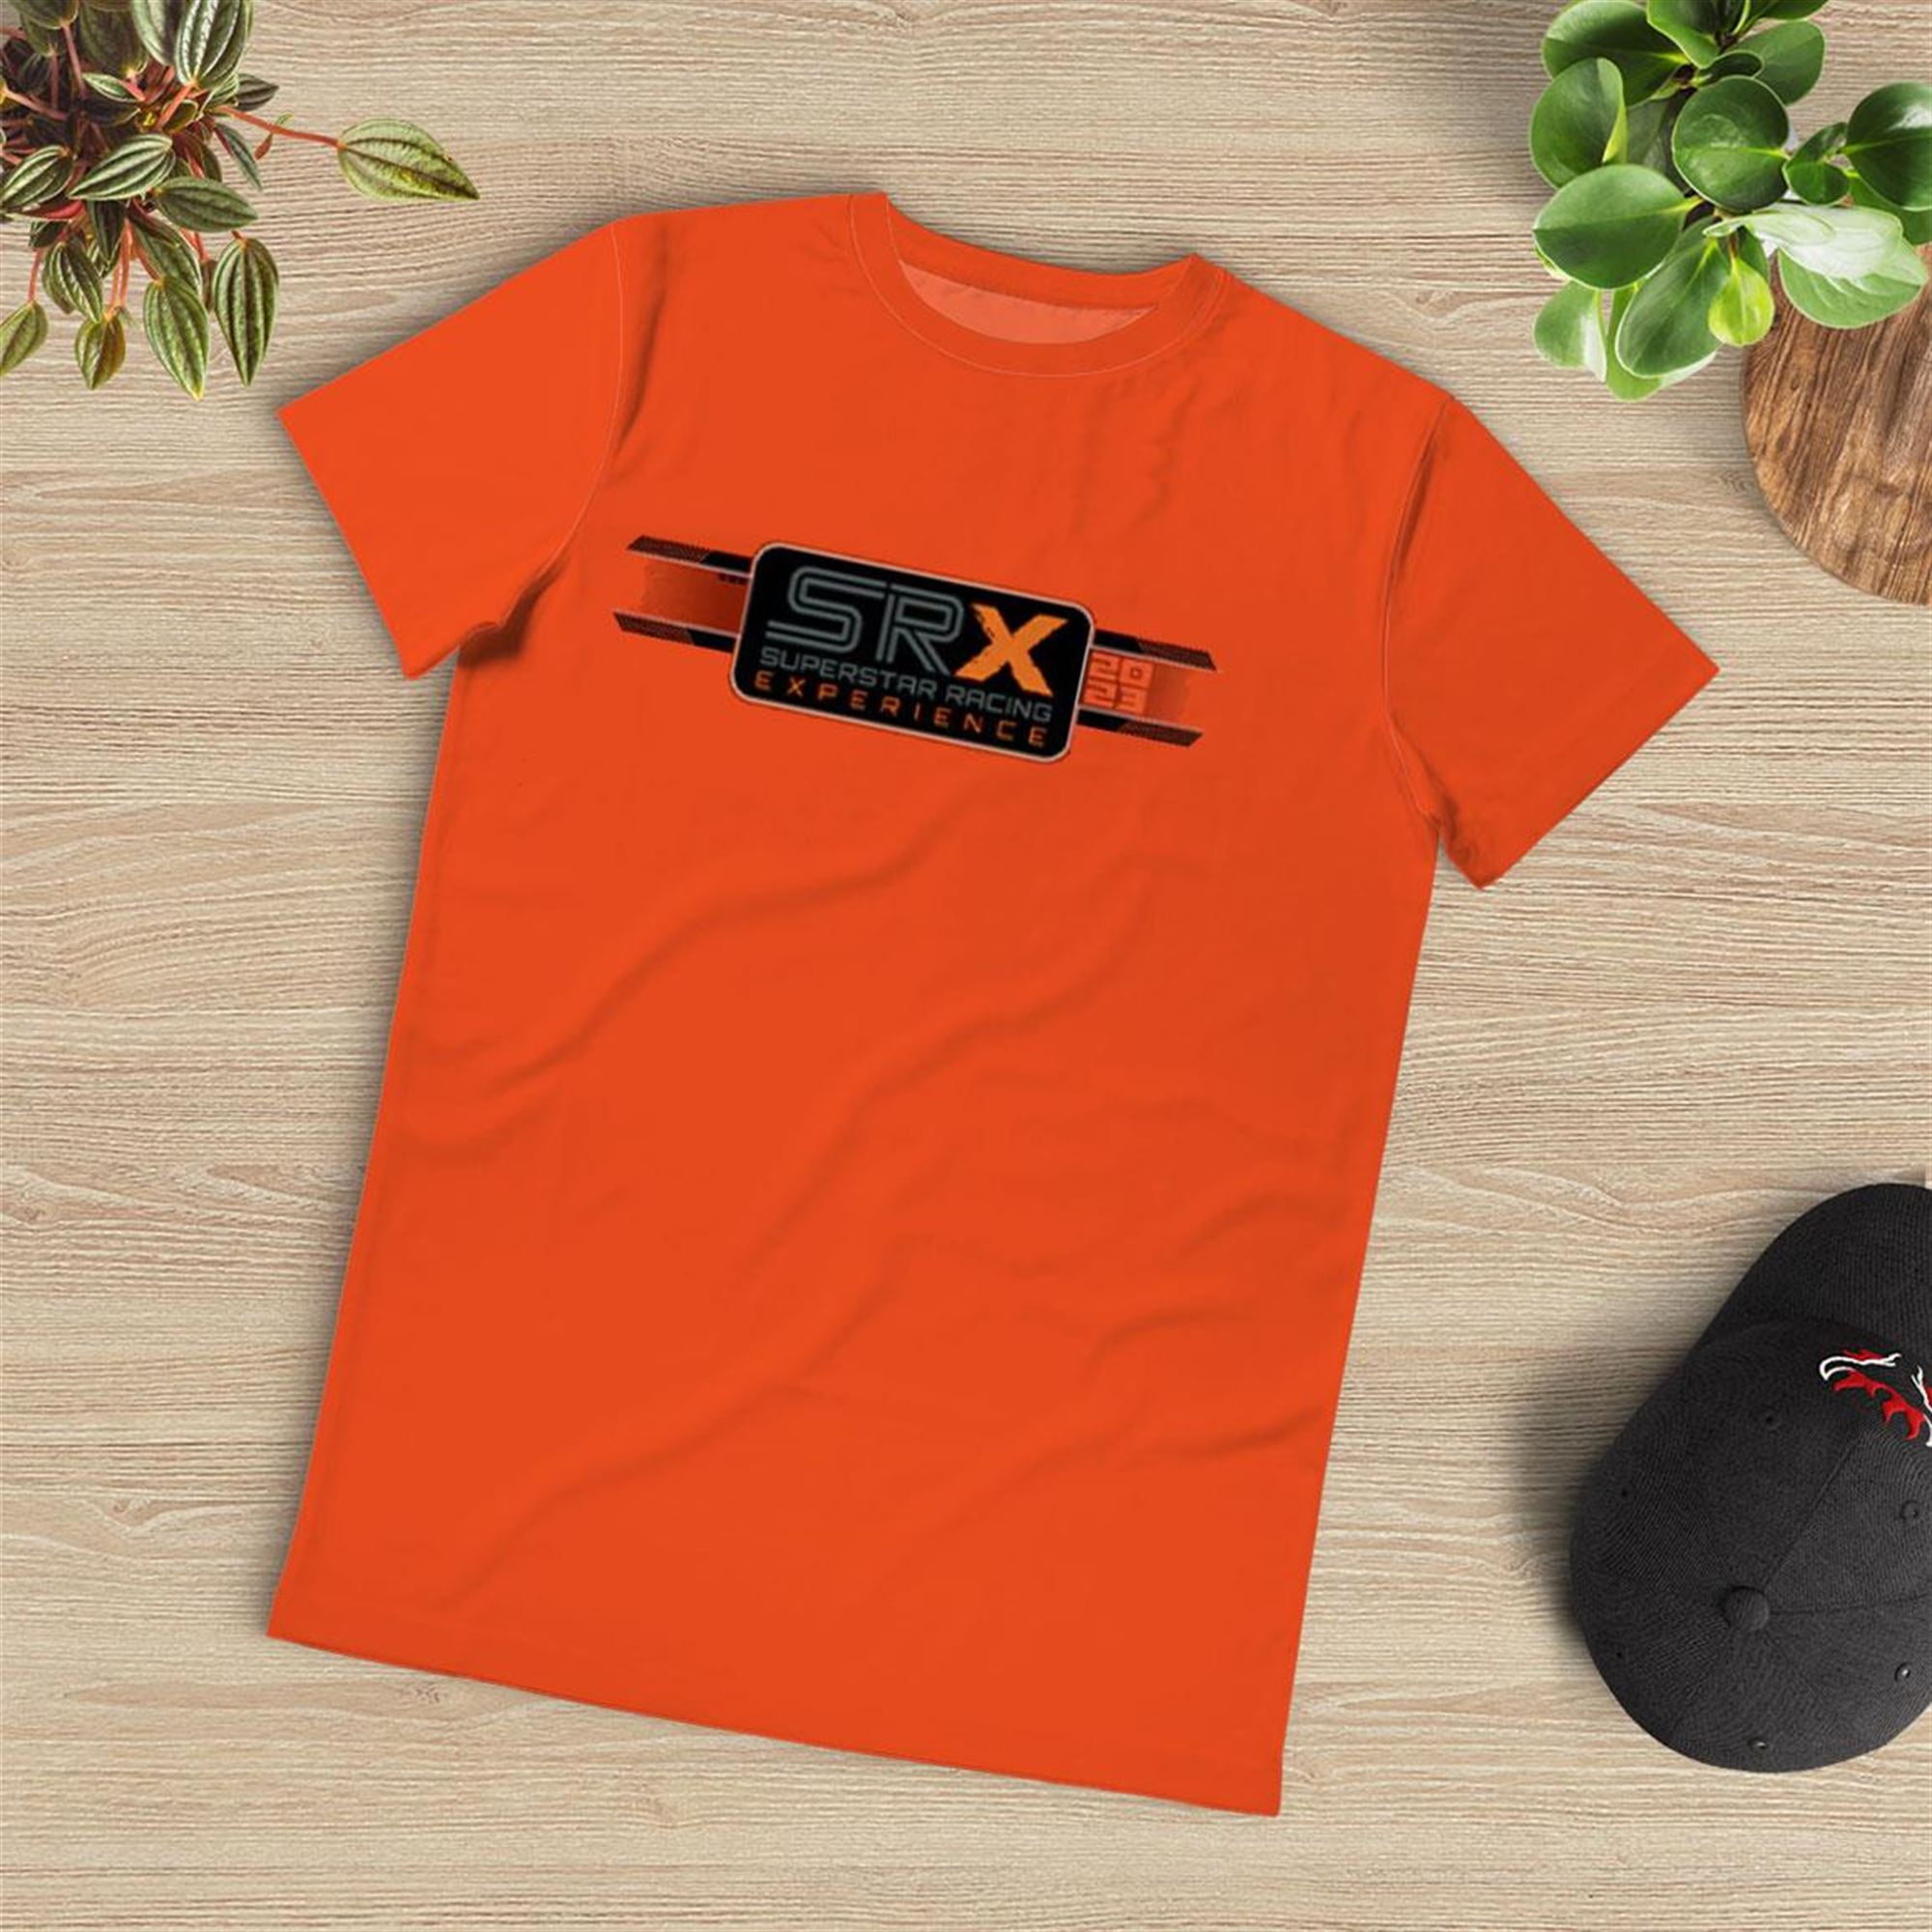 2023 Srx Car Orange Tee Srx Superstar Racing Experience Rancingshop Shirt